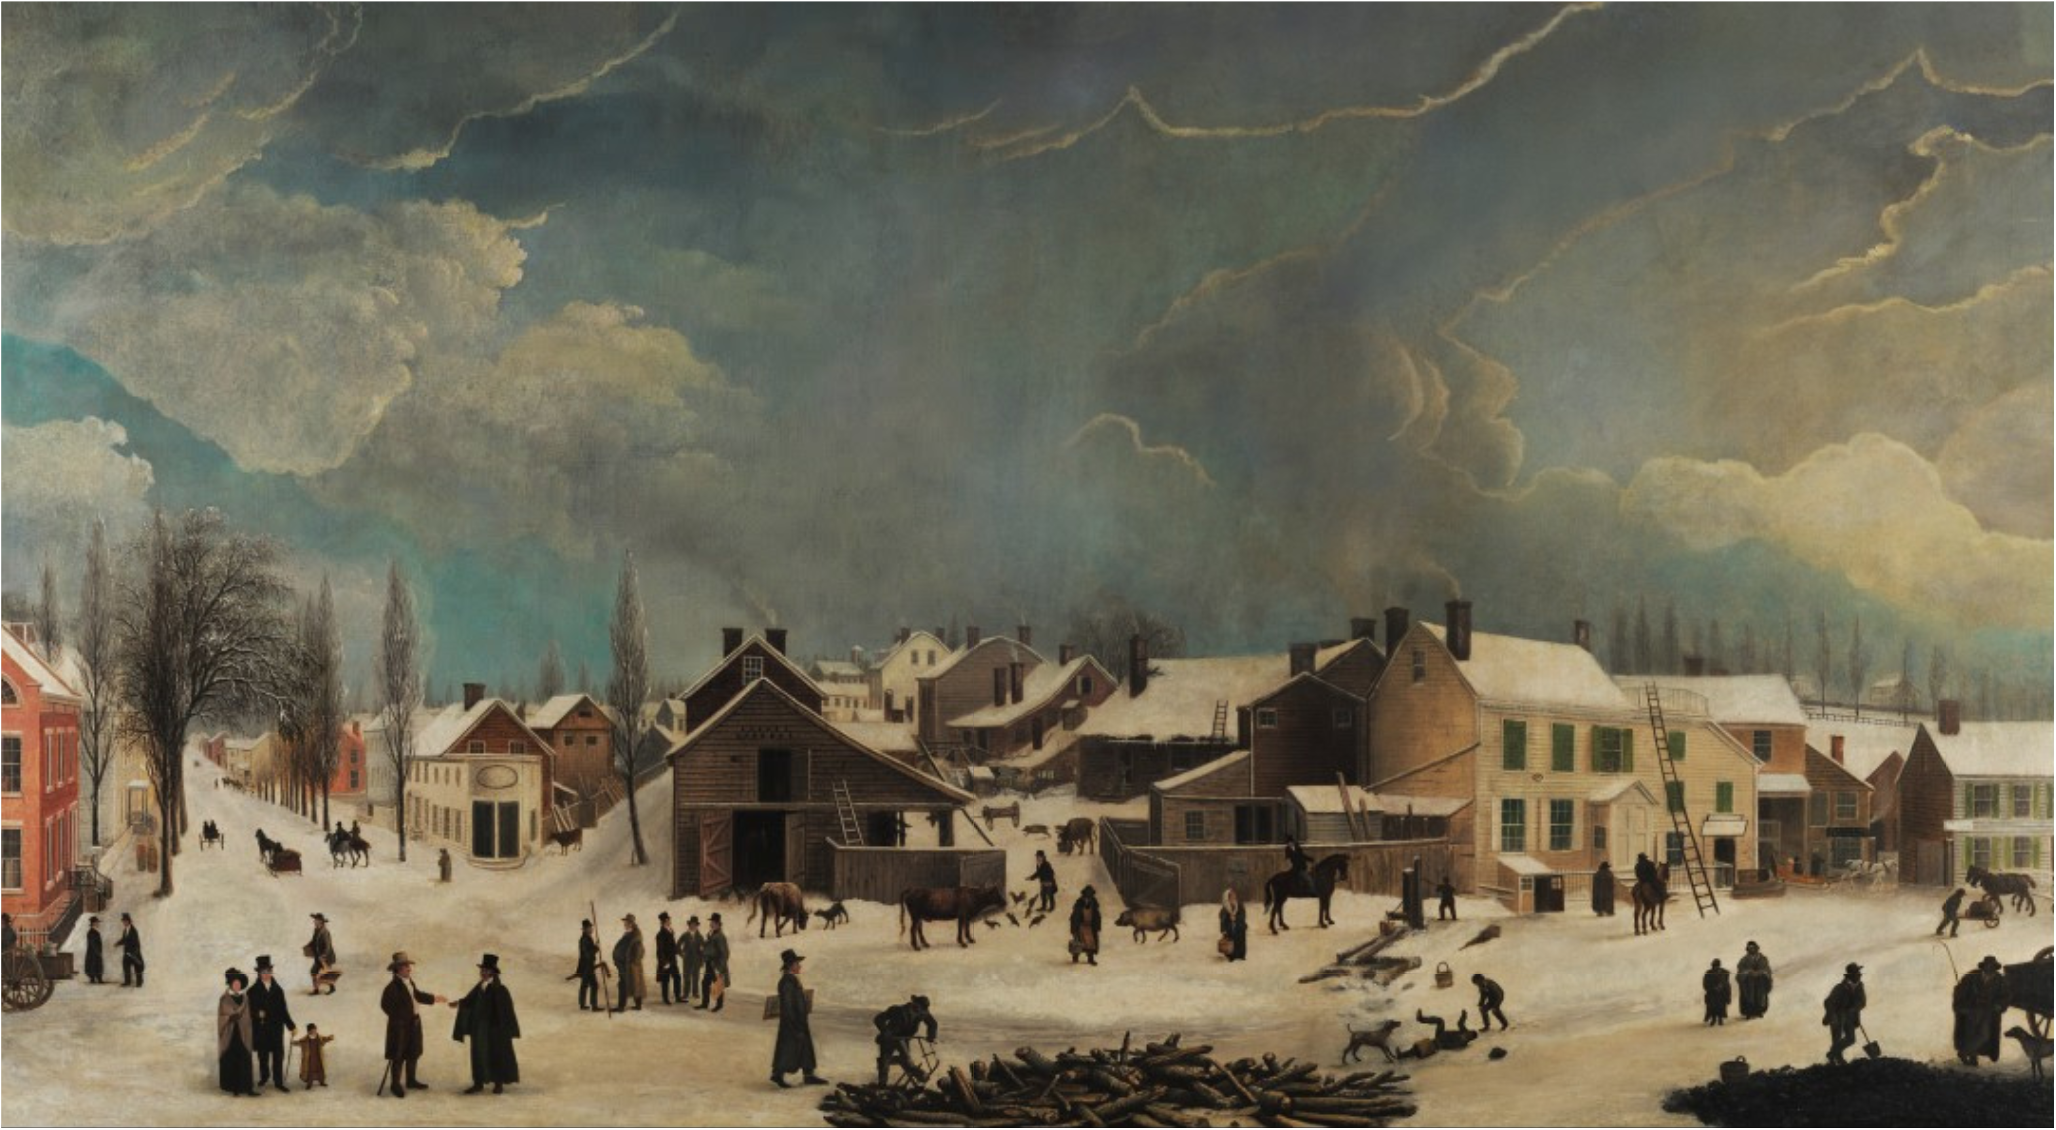 布鲁克林的冬景 by 弗朗西斯 盖伊 - 1820 水晶桥美国艺术博物馆